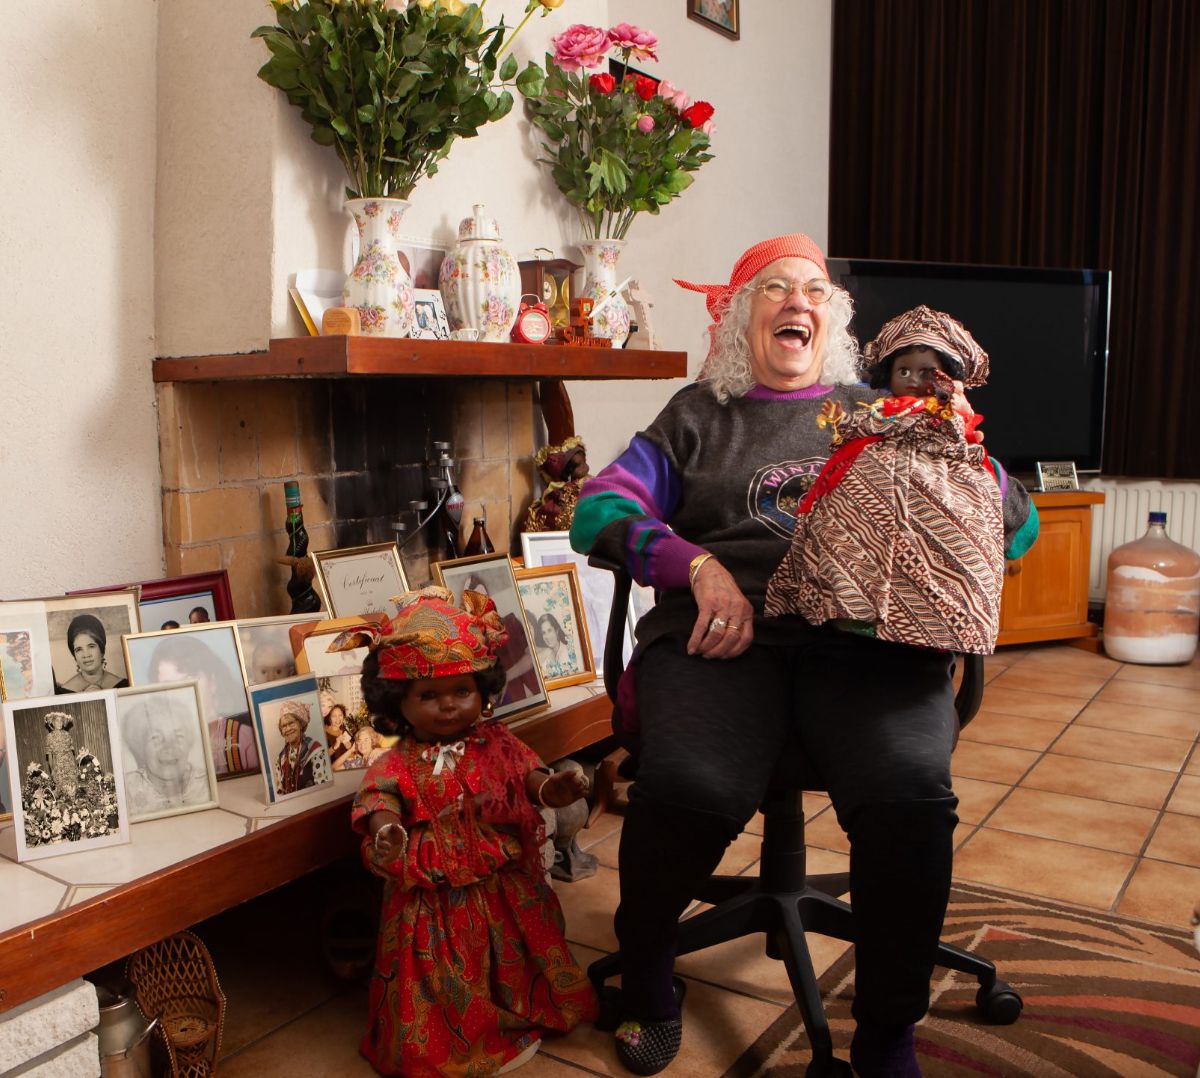 De woonkamer van Olga Lobo (93). Er zijn veel woonkamers die op ons bezoek wachten. Olga maakte alle poppen zelf.  